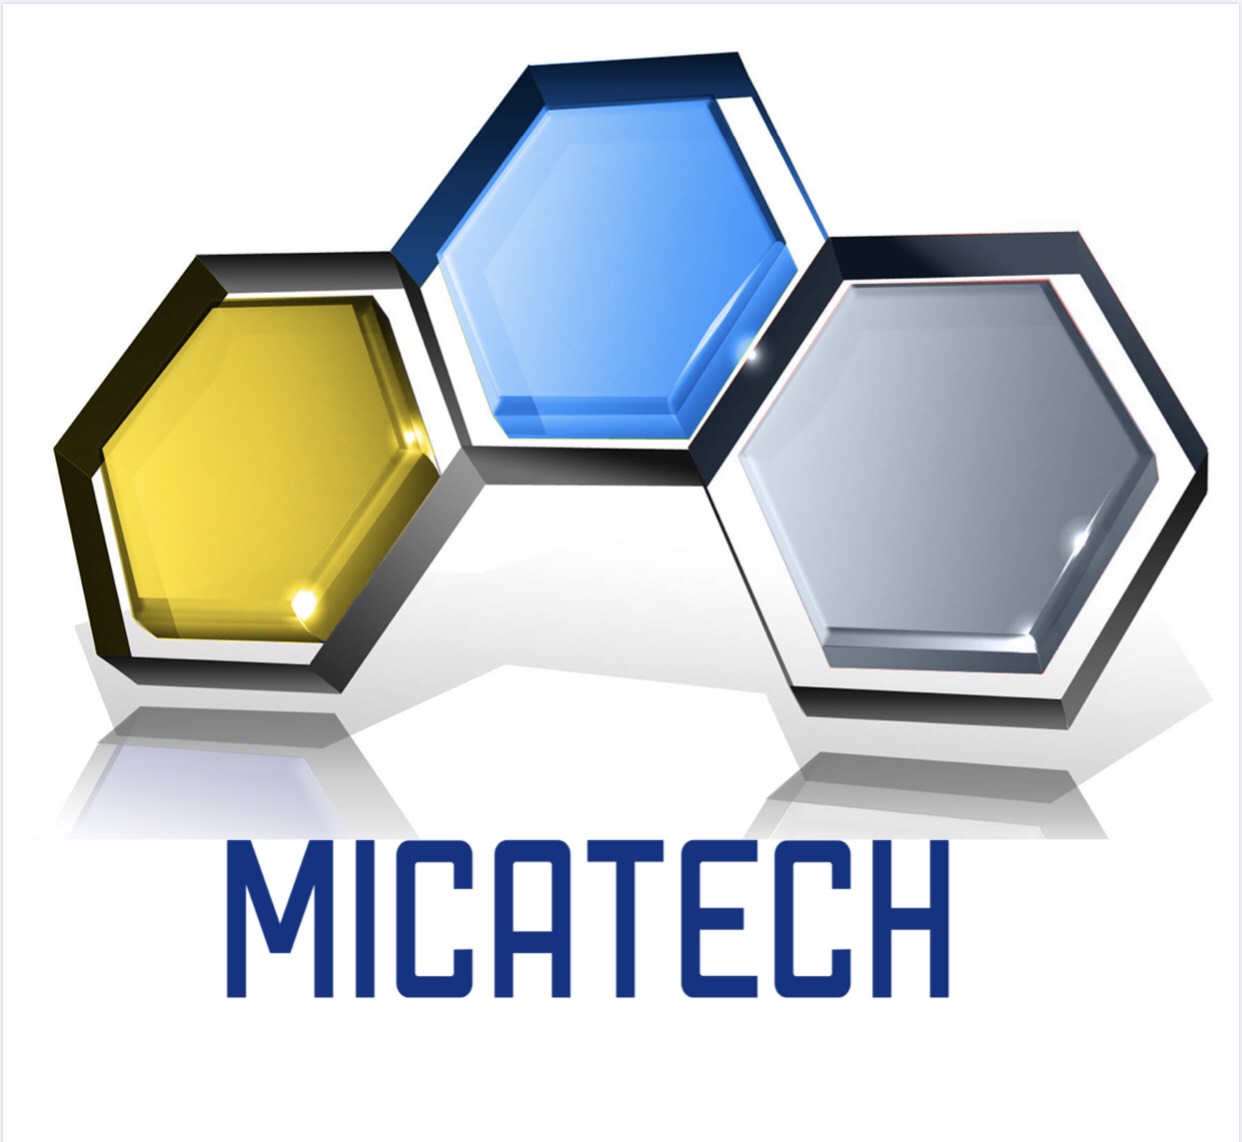 Micatech - Xưởng sản xuất sỉ và lẻ Mica Tấm trong, Mica Tấm màu